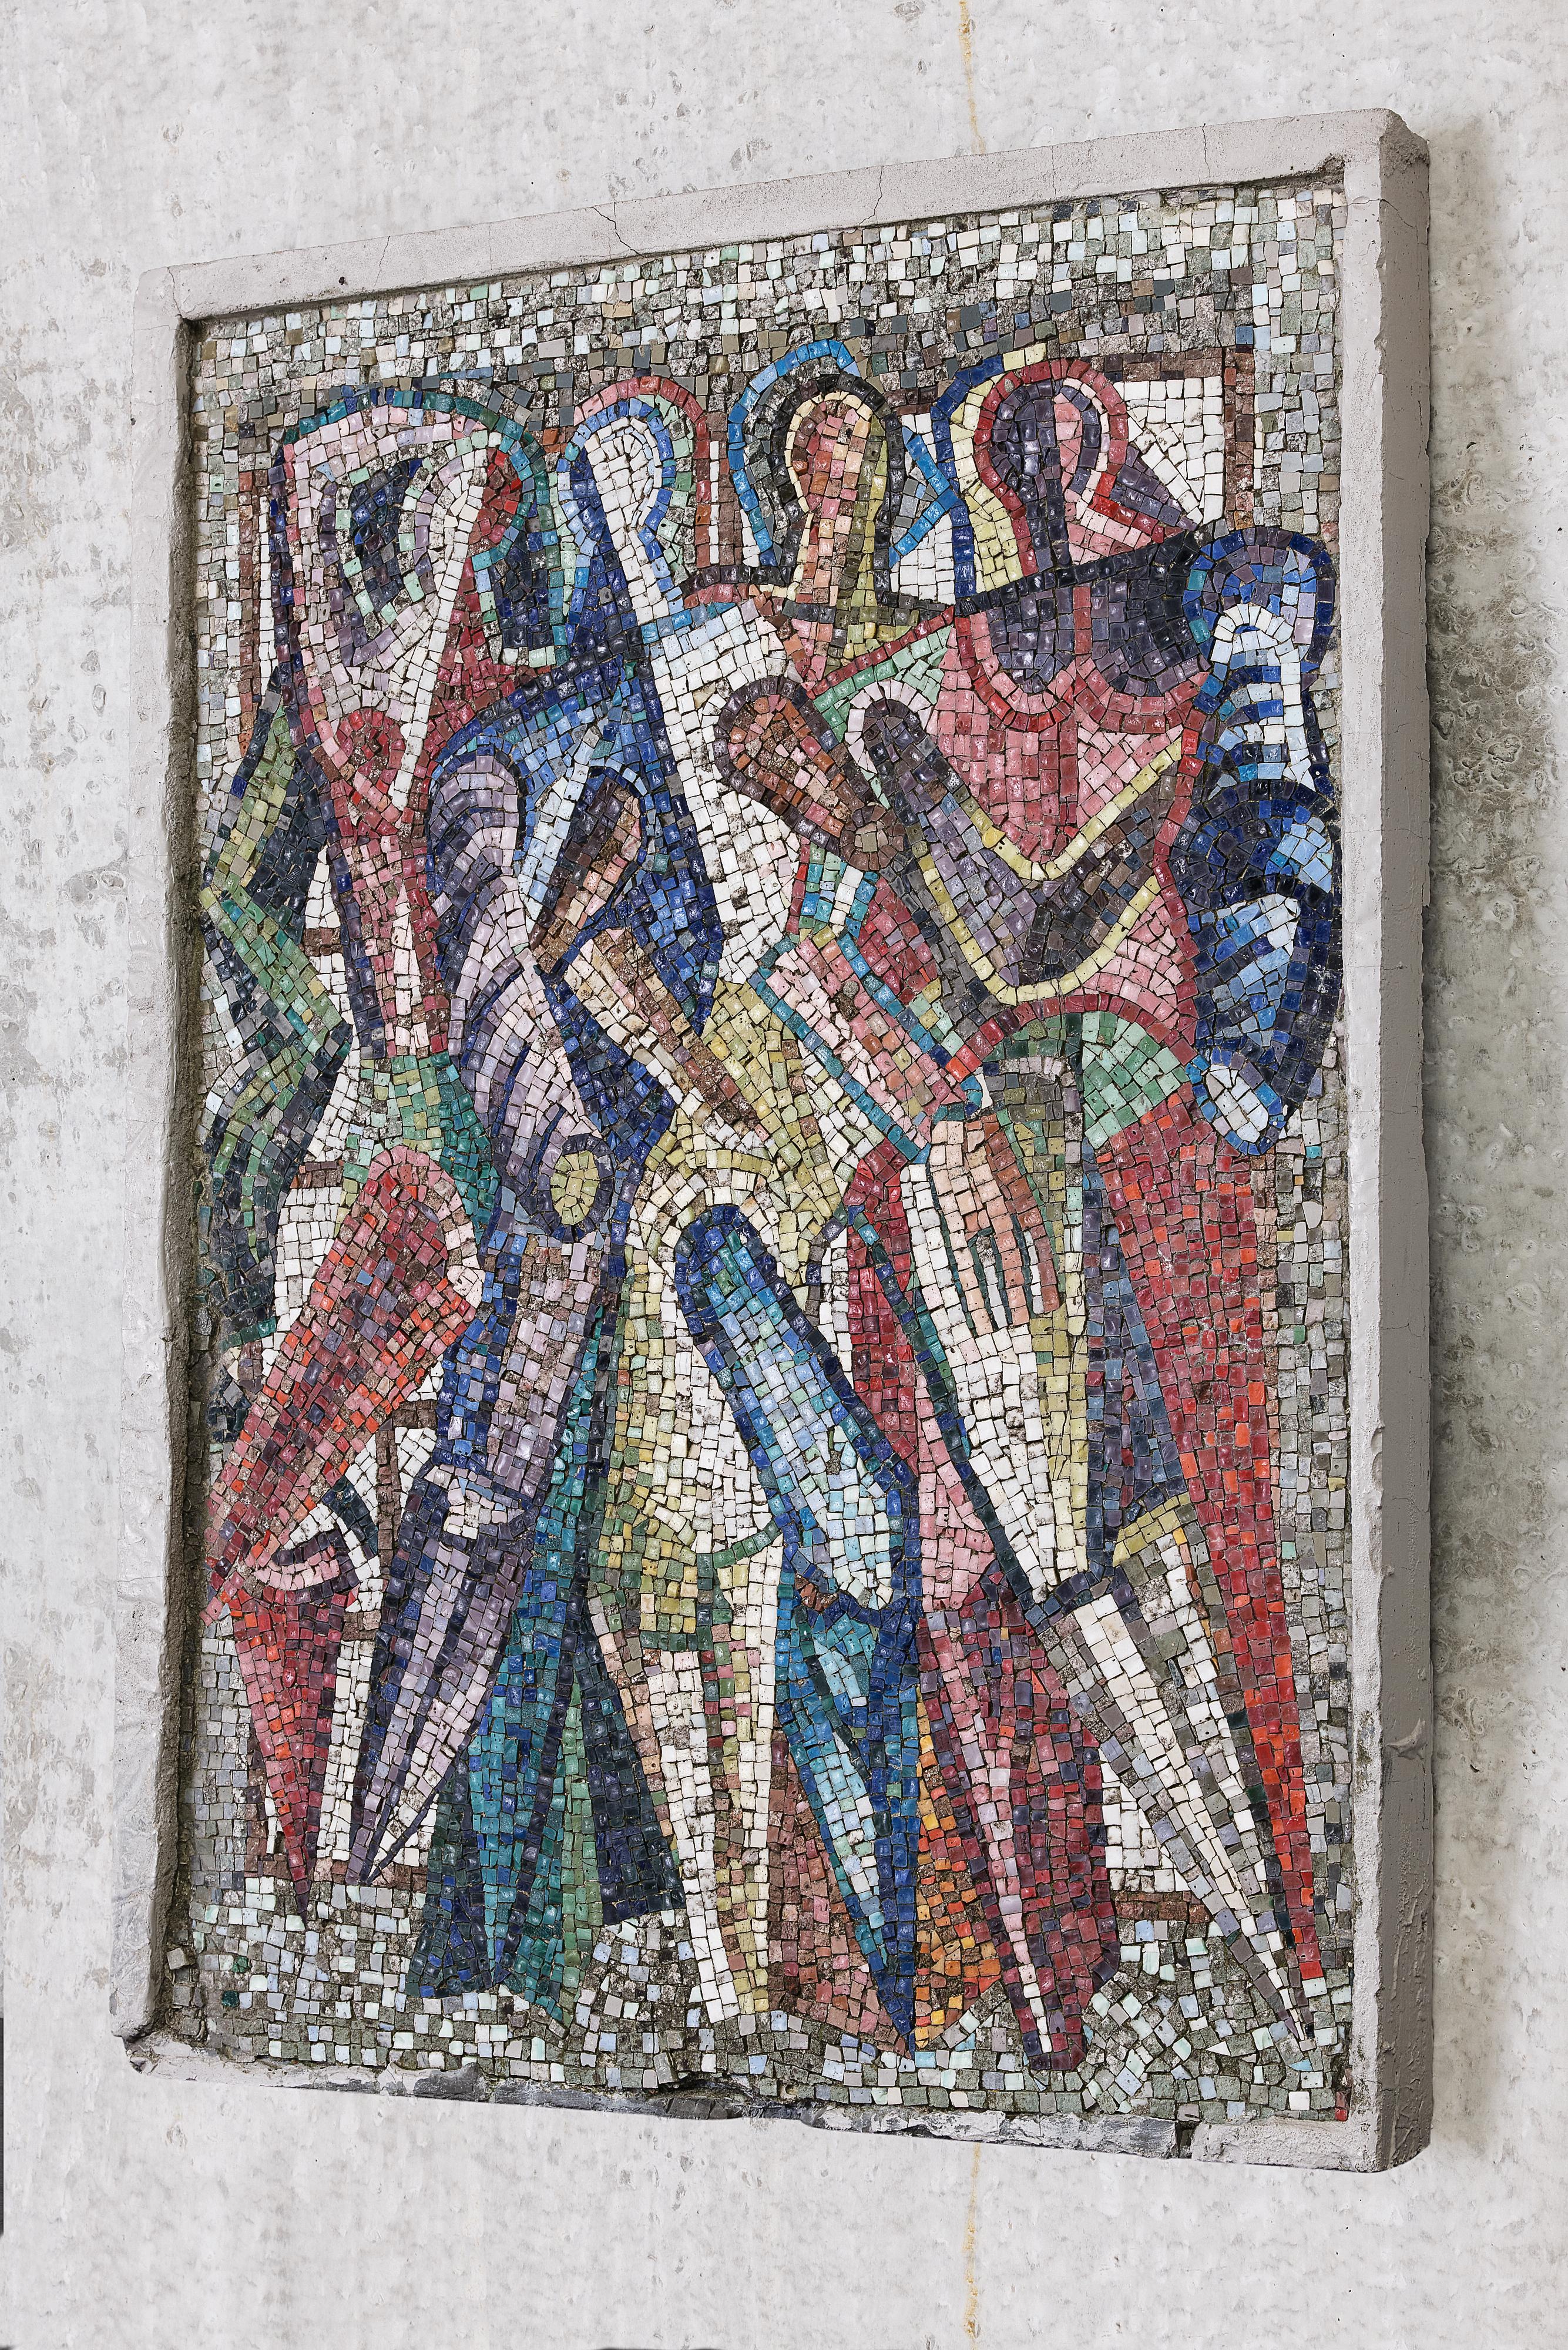 Ein großes, leuchtendes und farbenfrohes Mosaik aus mehreren abstrakten Figuren mit dem Titel 'Geweld' (Gewalt), eingebettet in einen Betonsockel. Es ist das Gegenstück zu einem anderen Wandgemälde mit dem Titel 